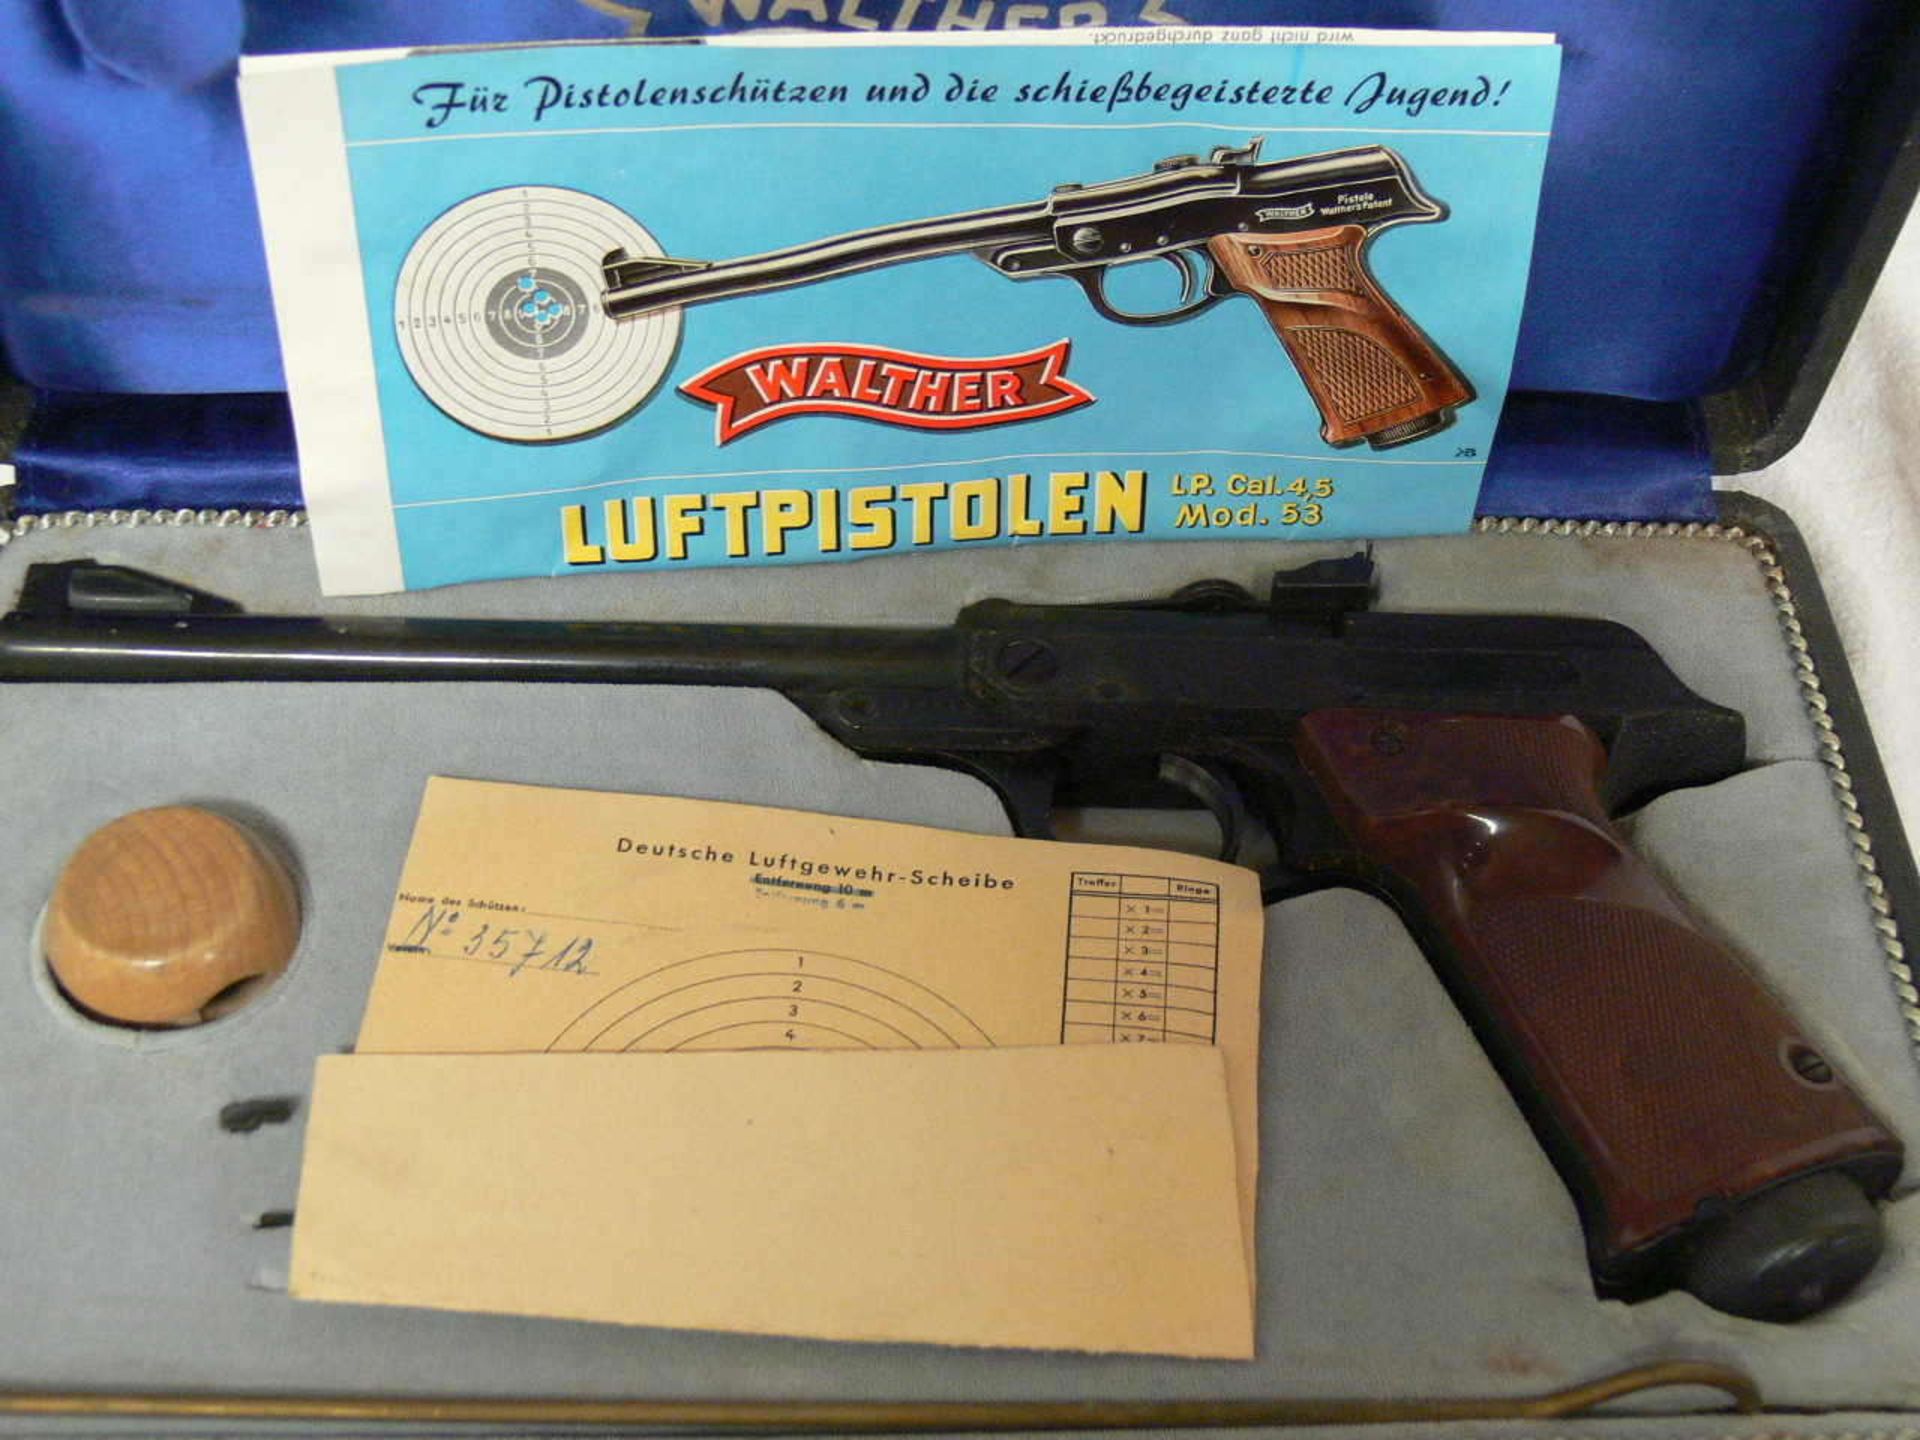 Luftpistole Walther Mo. 53 LP Cal. 4,5. Im Original - Etui. Mit Holzspannkopf. Dazu Magazine "